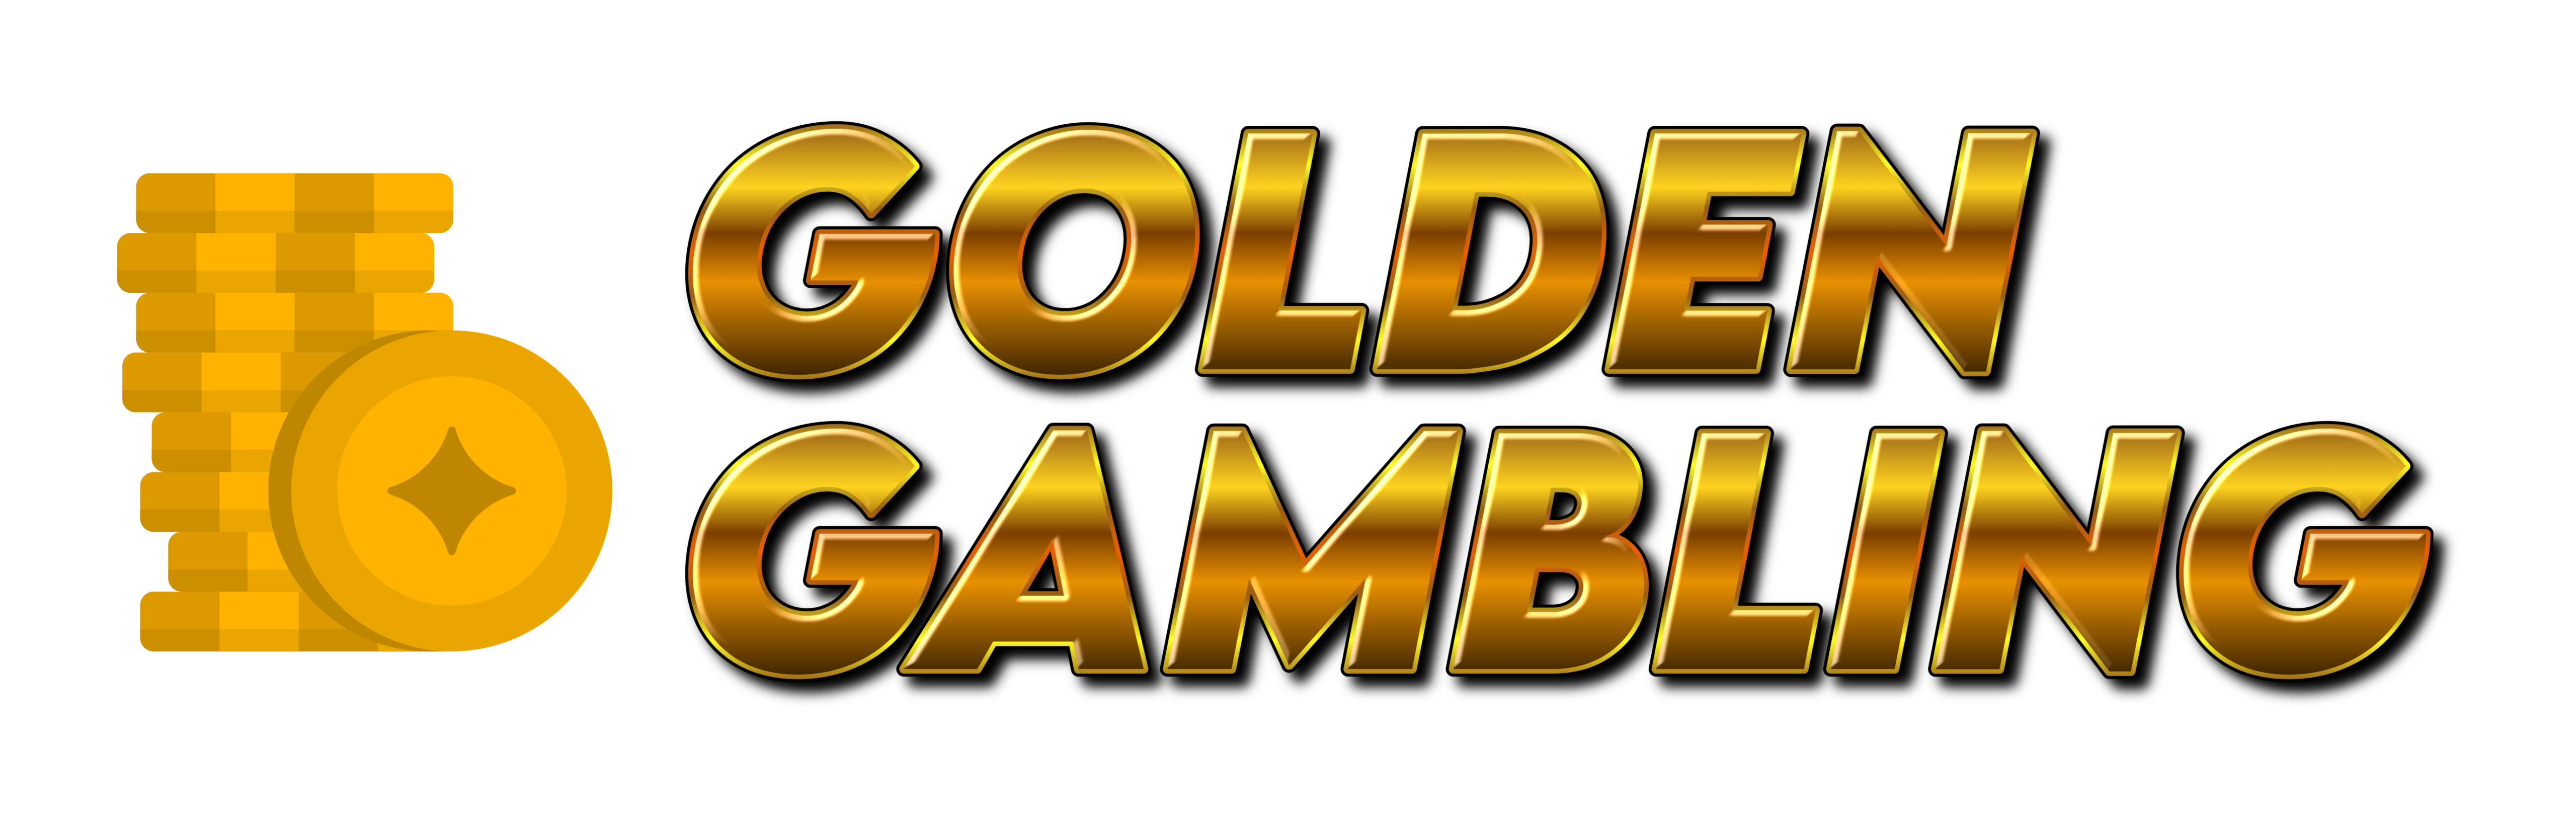 Golden Gambling